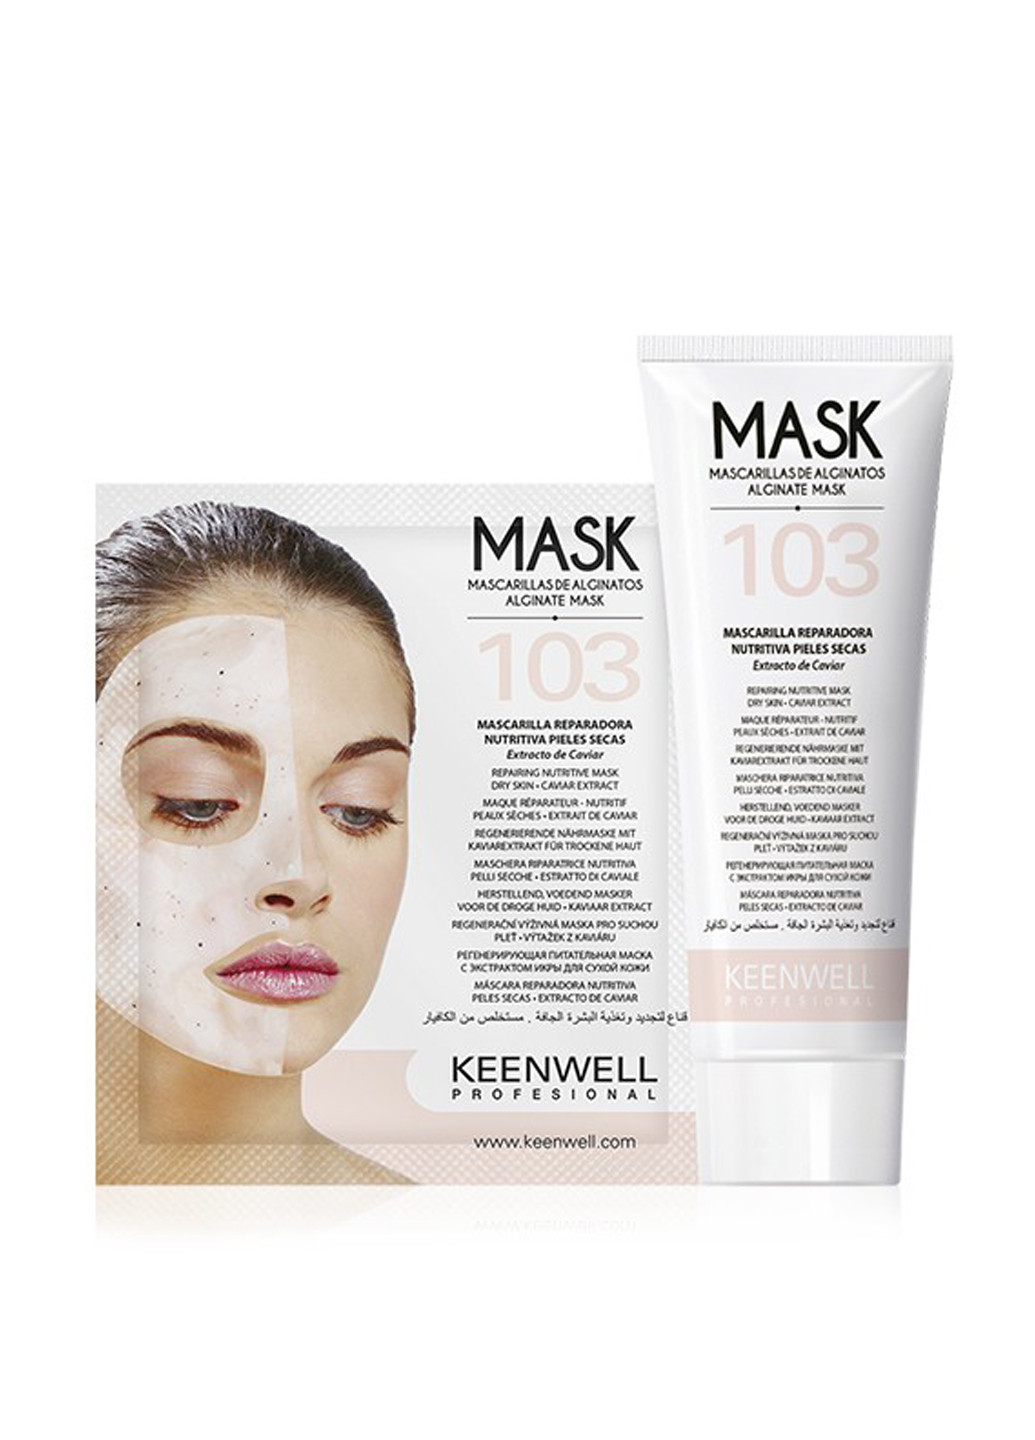 Маска регенерирующая питательная альгинатная маска для сухой кожи, 150 г Keenwell